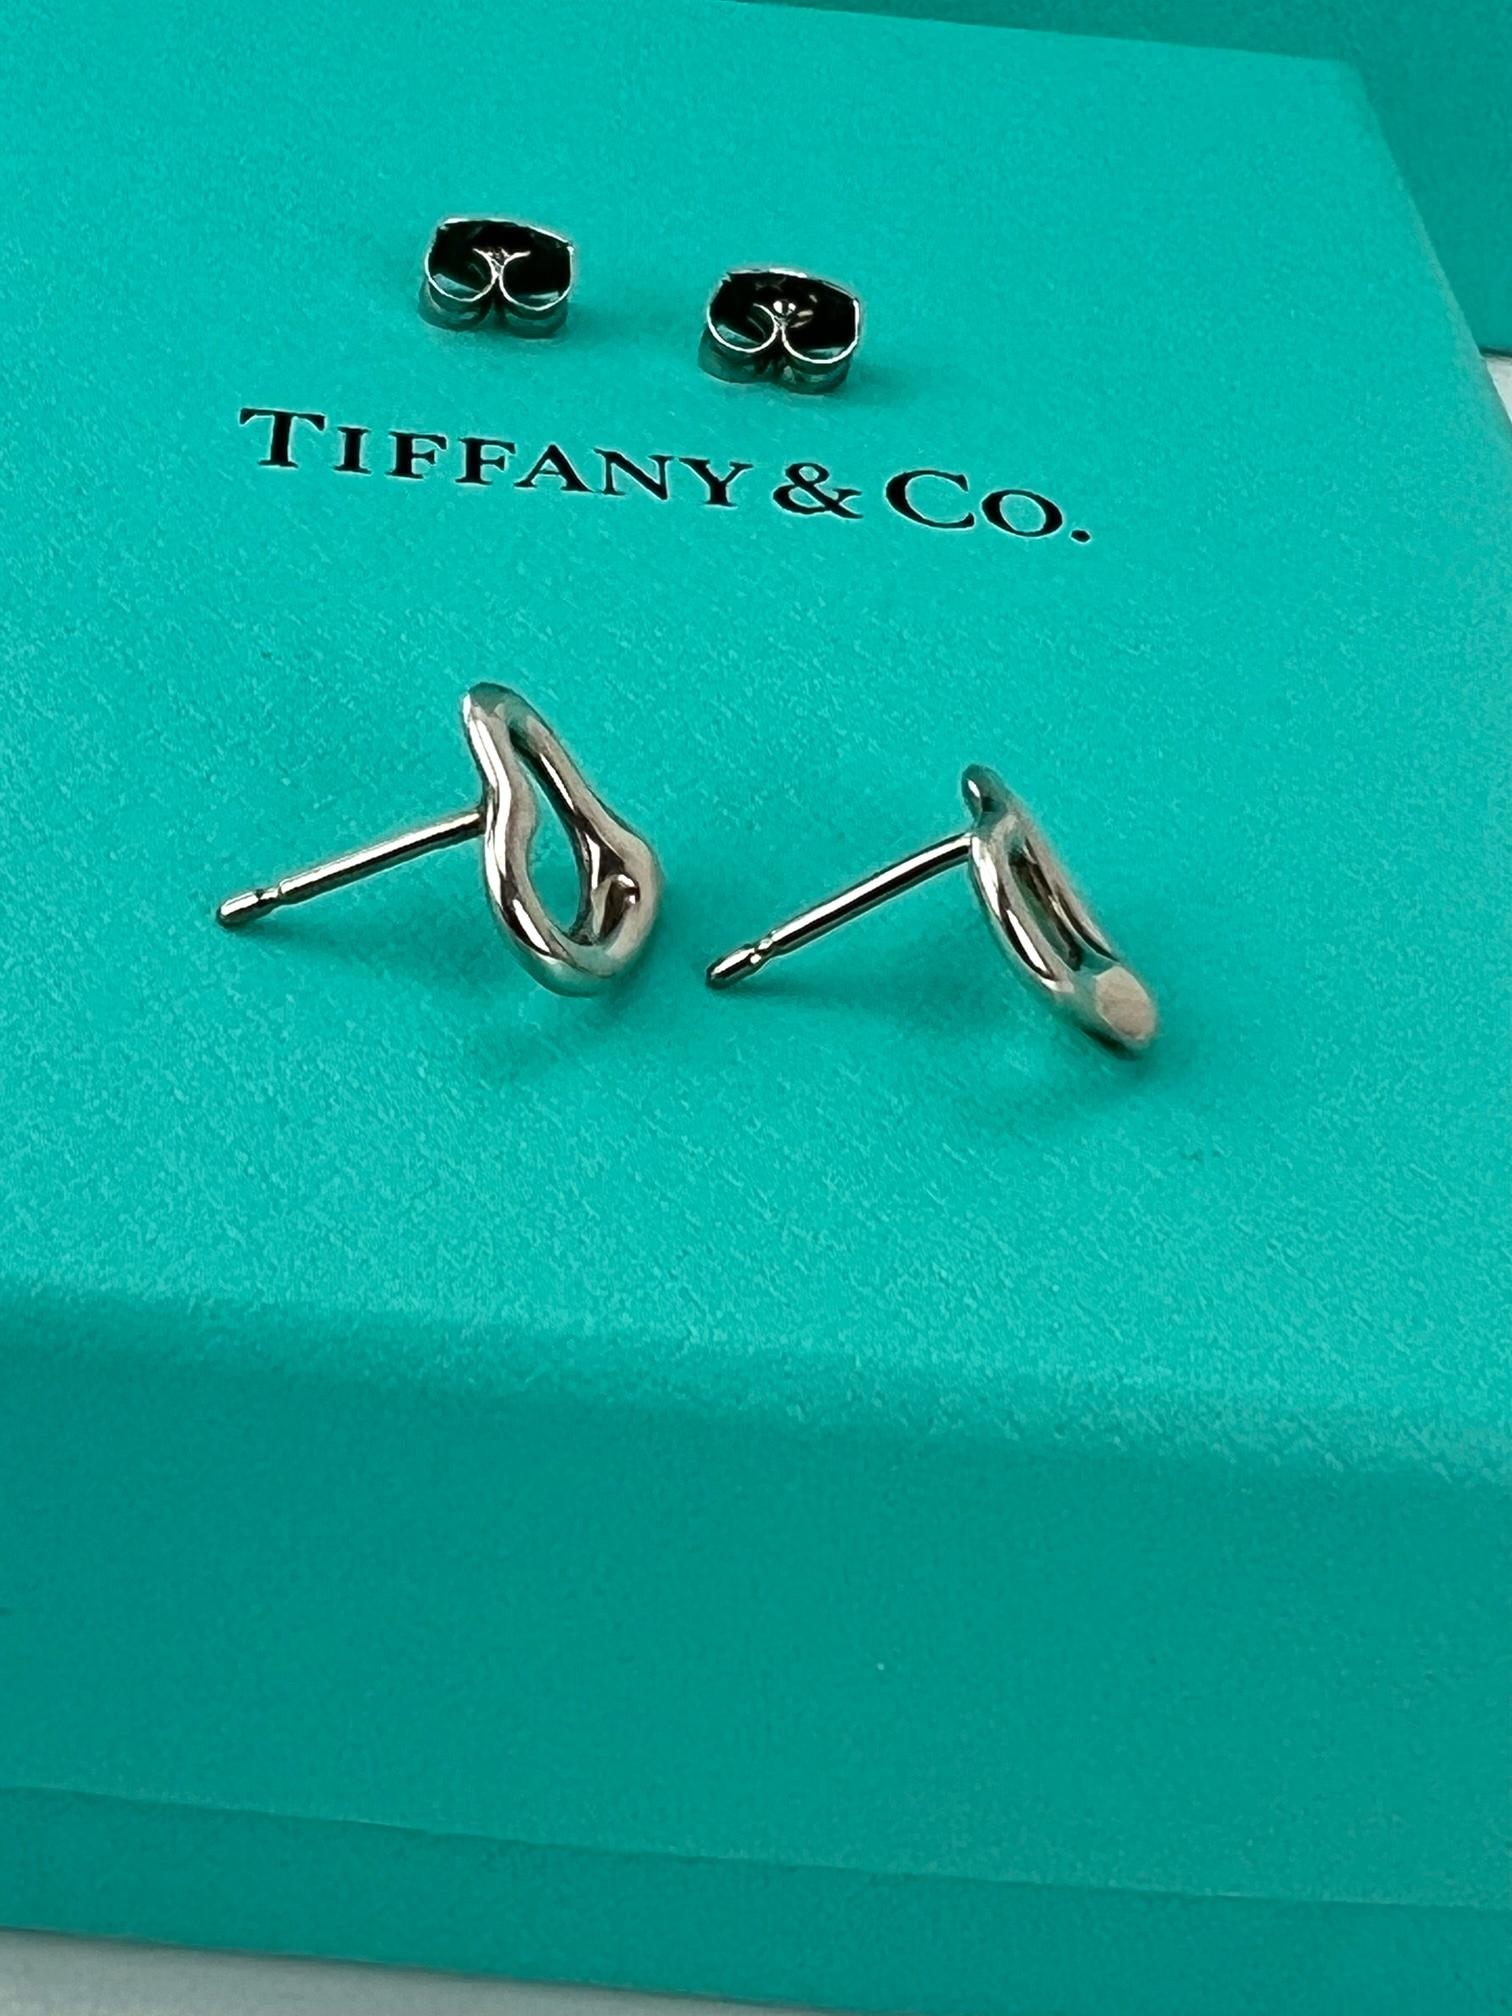  TIFFANY Open Heart Stud Earrings in Sterling Silver 925 Elsa Peretti  2